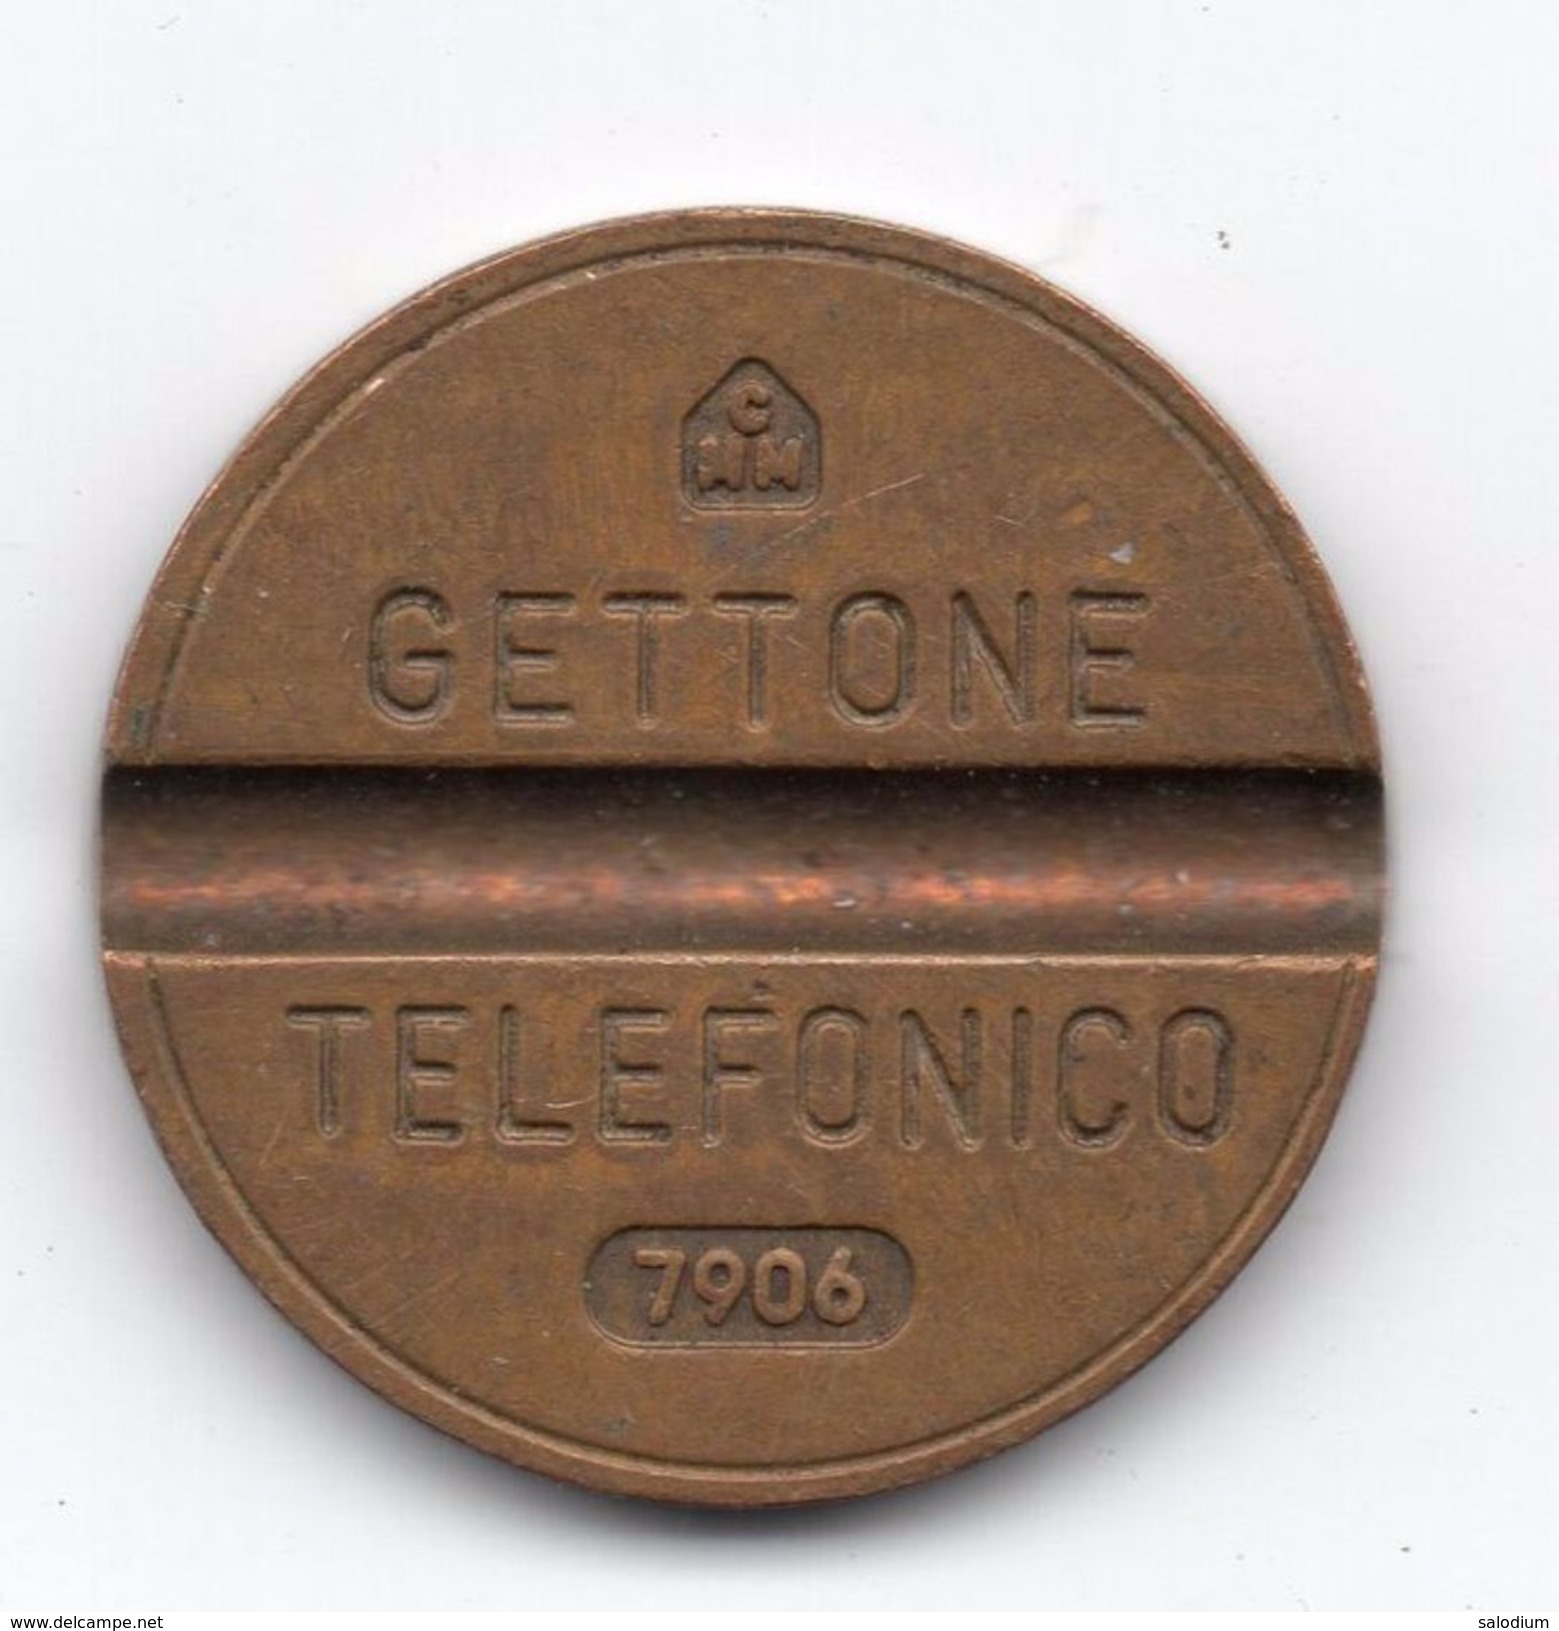 Gettone Telefonico 7609 Token Telephone - (Id-856) - Professionnels/De Société